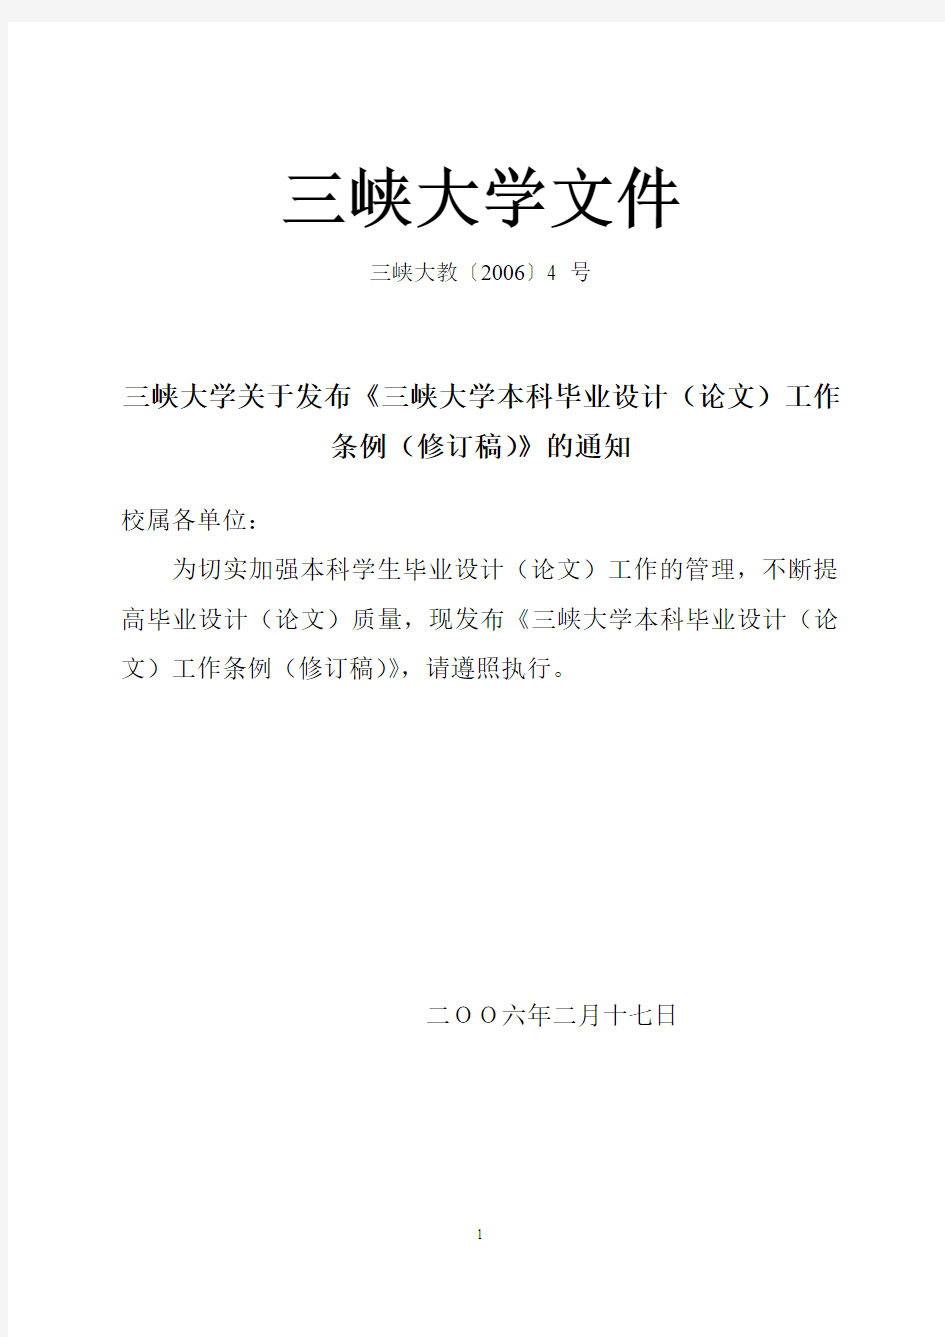 三峡大学毕业设计(论文)工作条例(修订稿)2006